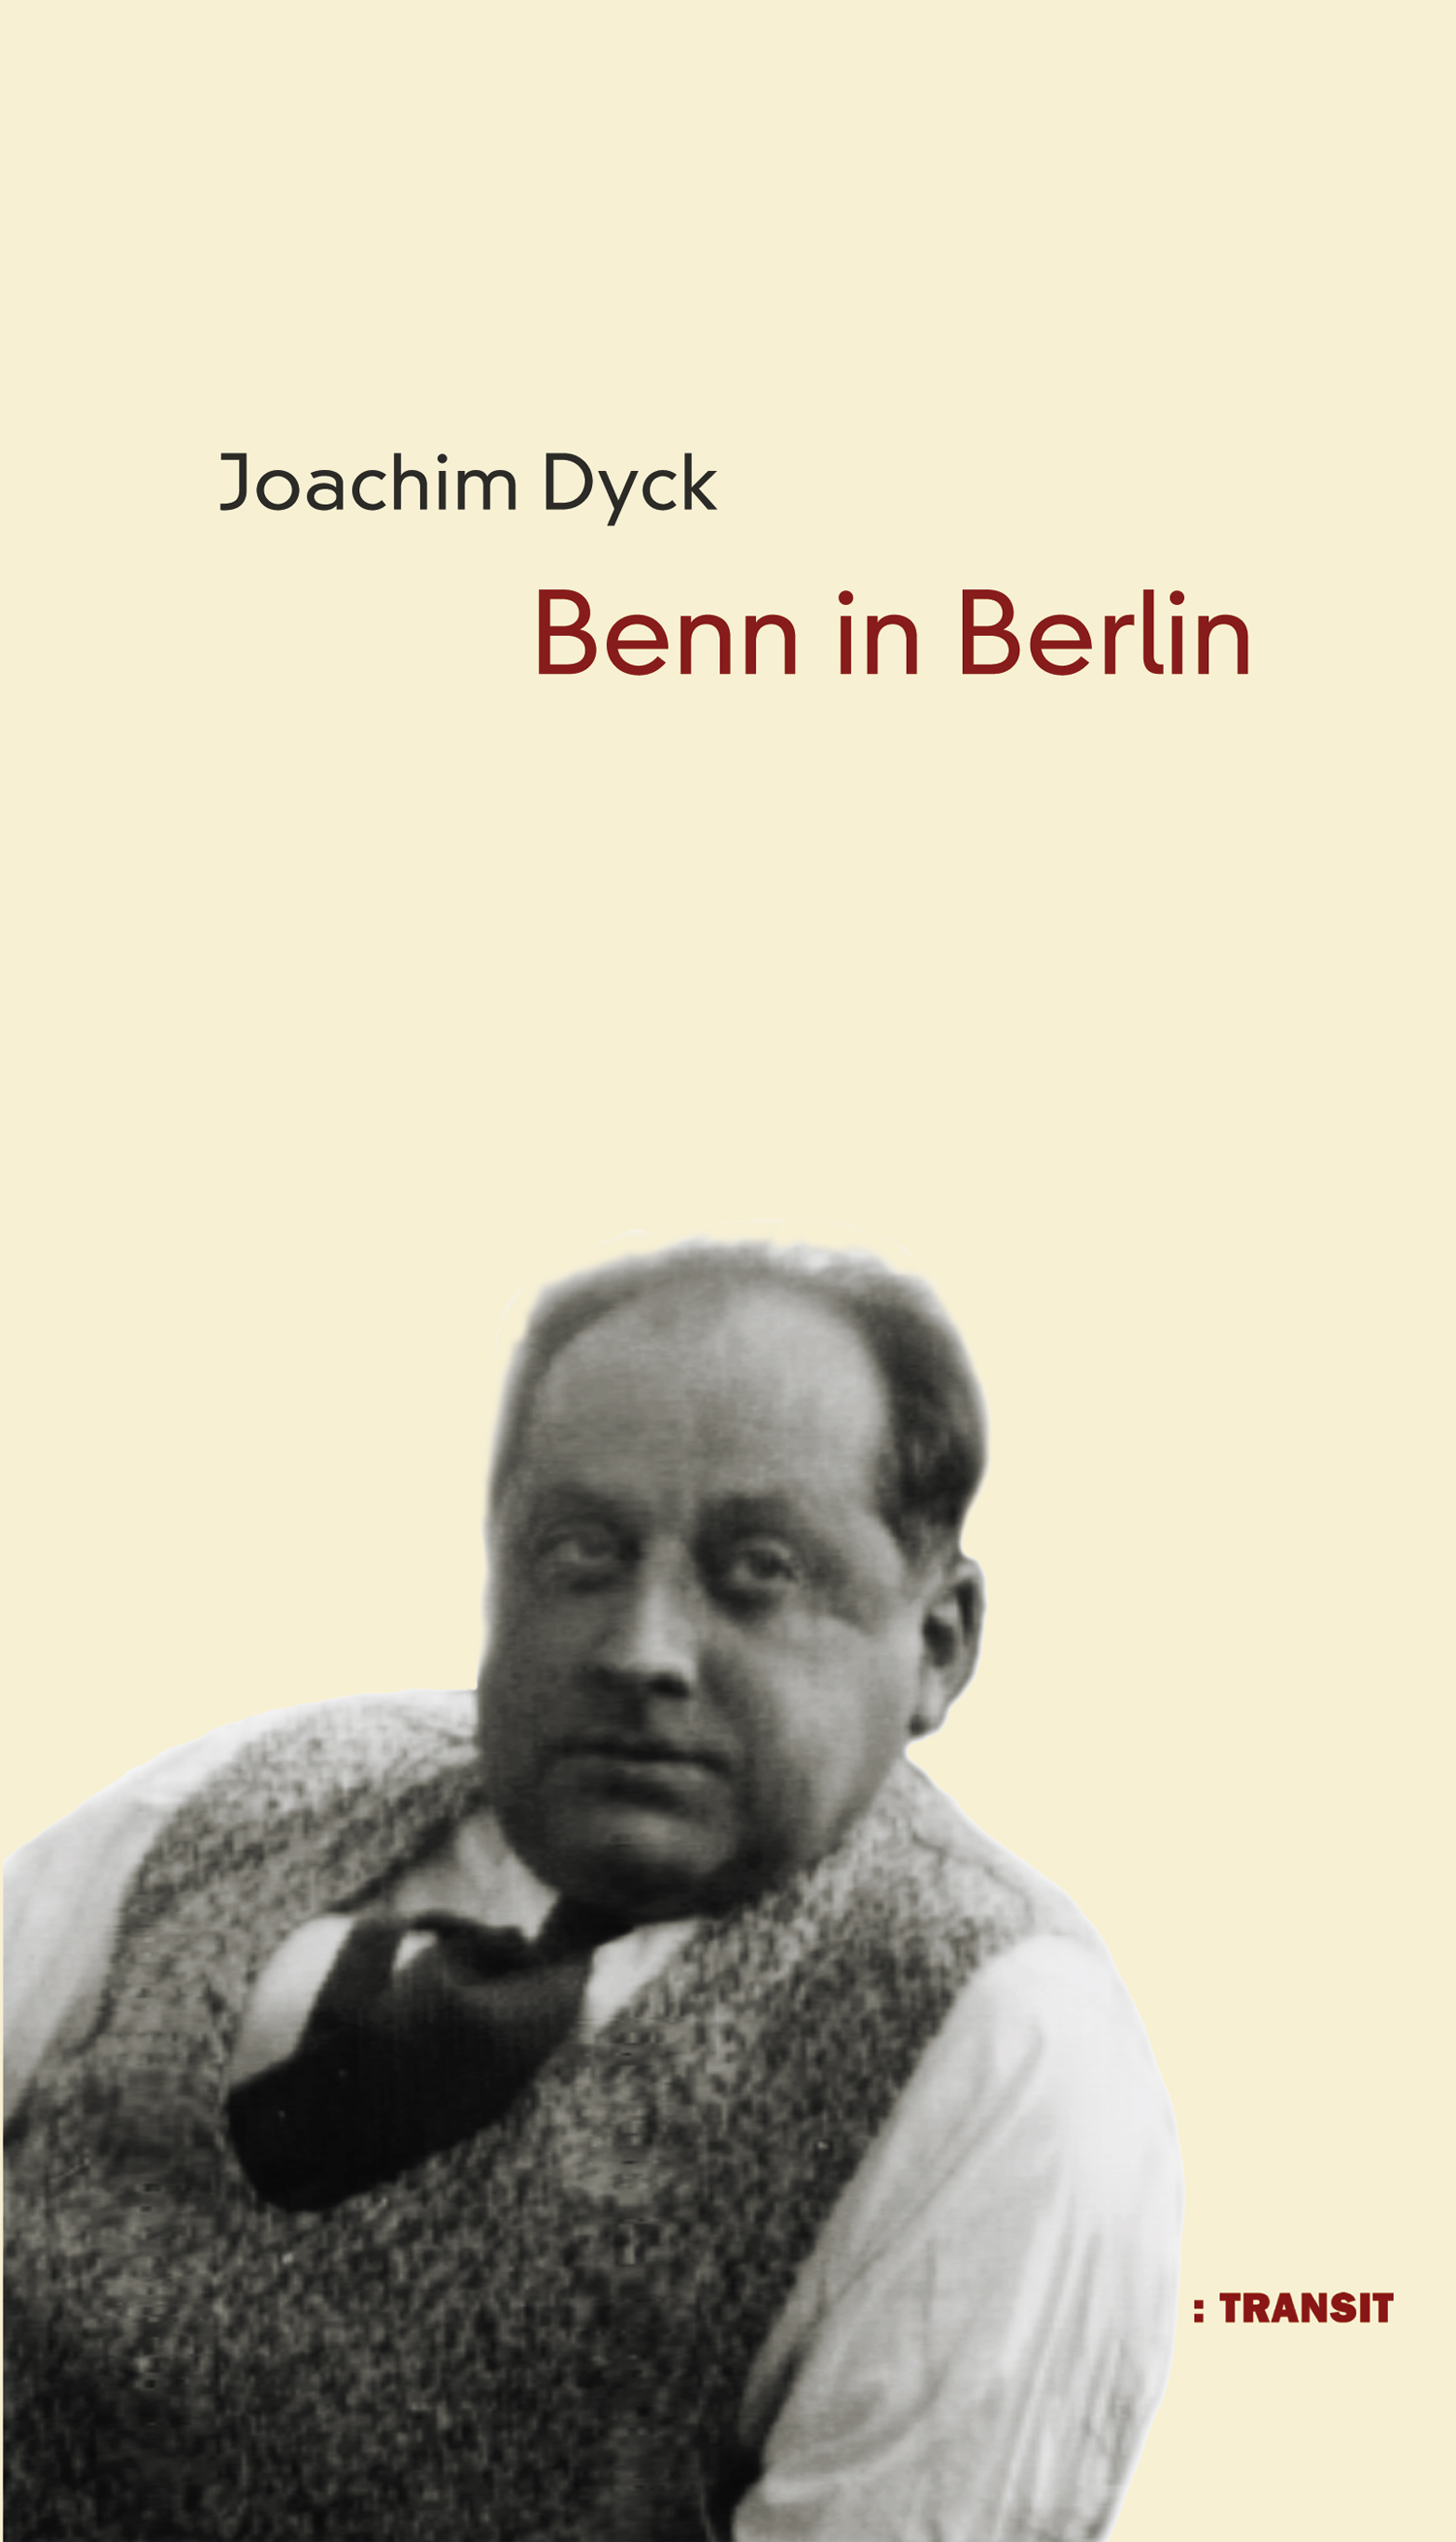 Joachim Dyck Benn in Berlin